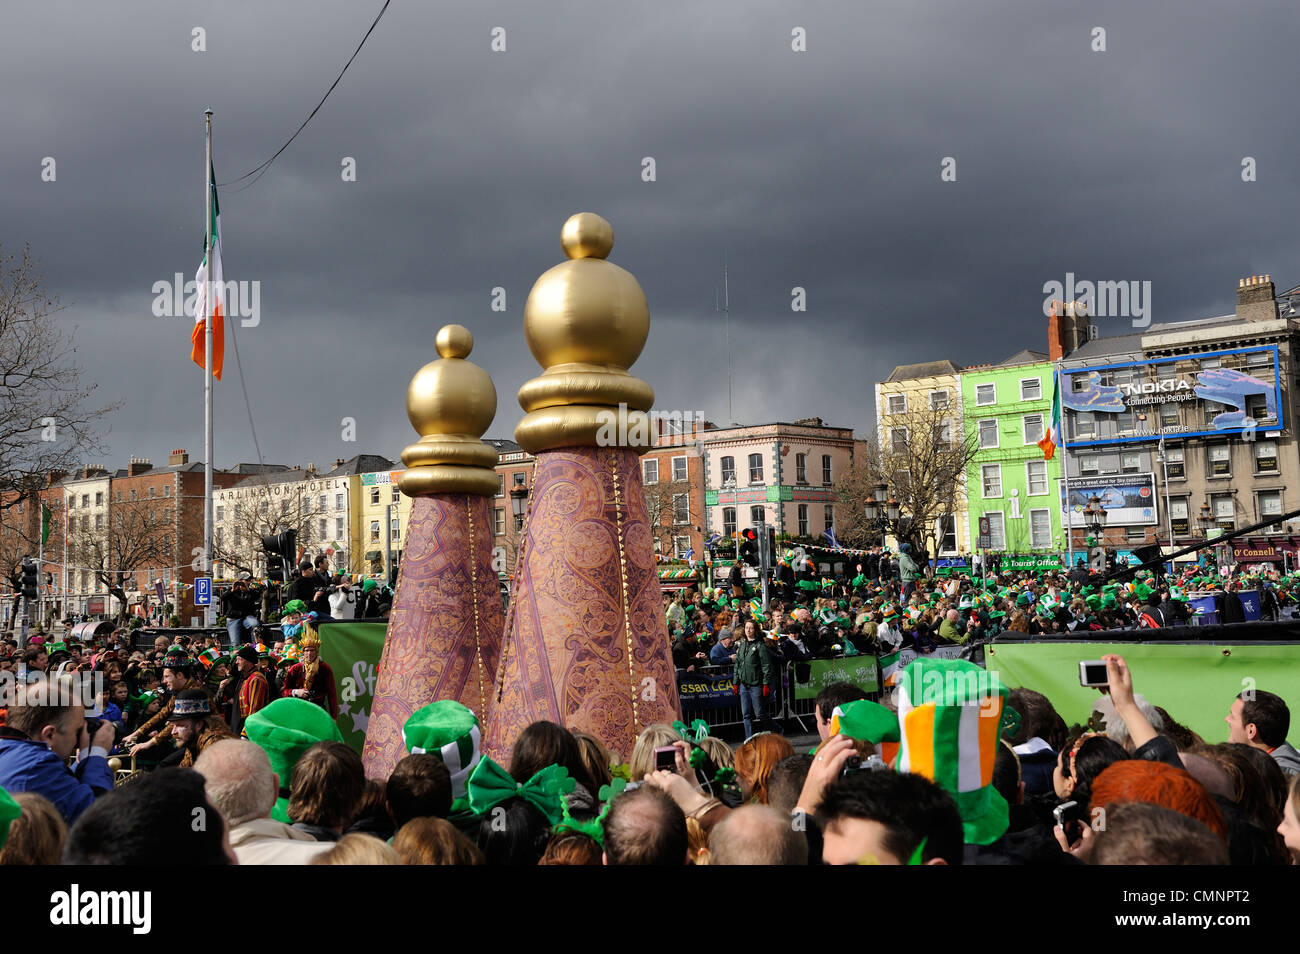 St. Patrick's Day in Dublin Stock Photo